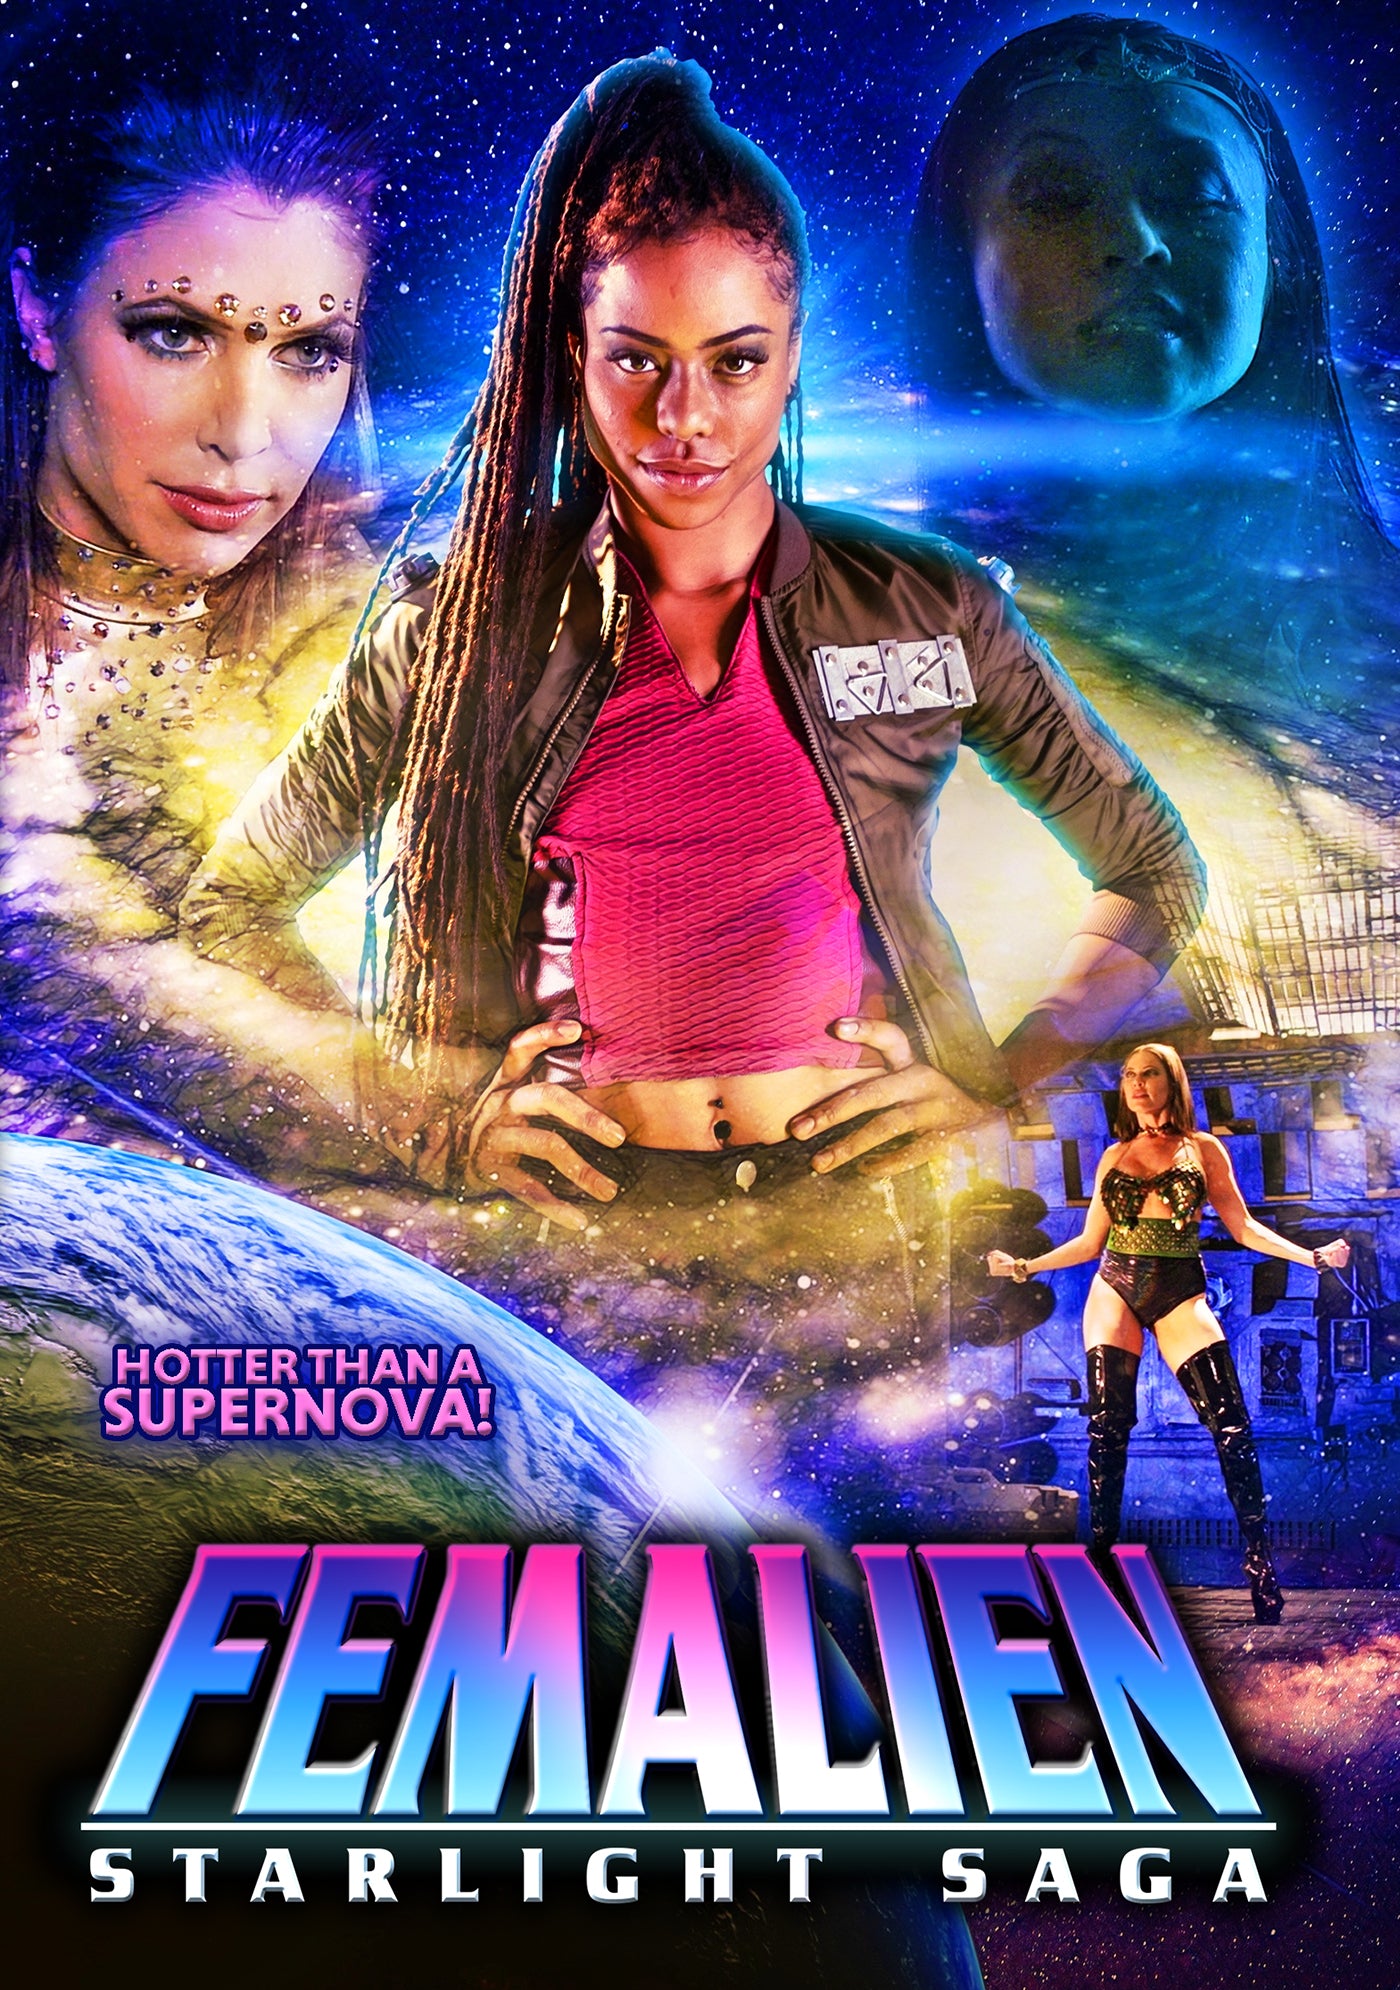 FEMALIEN: STARLIGHT SAGA DVD